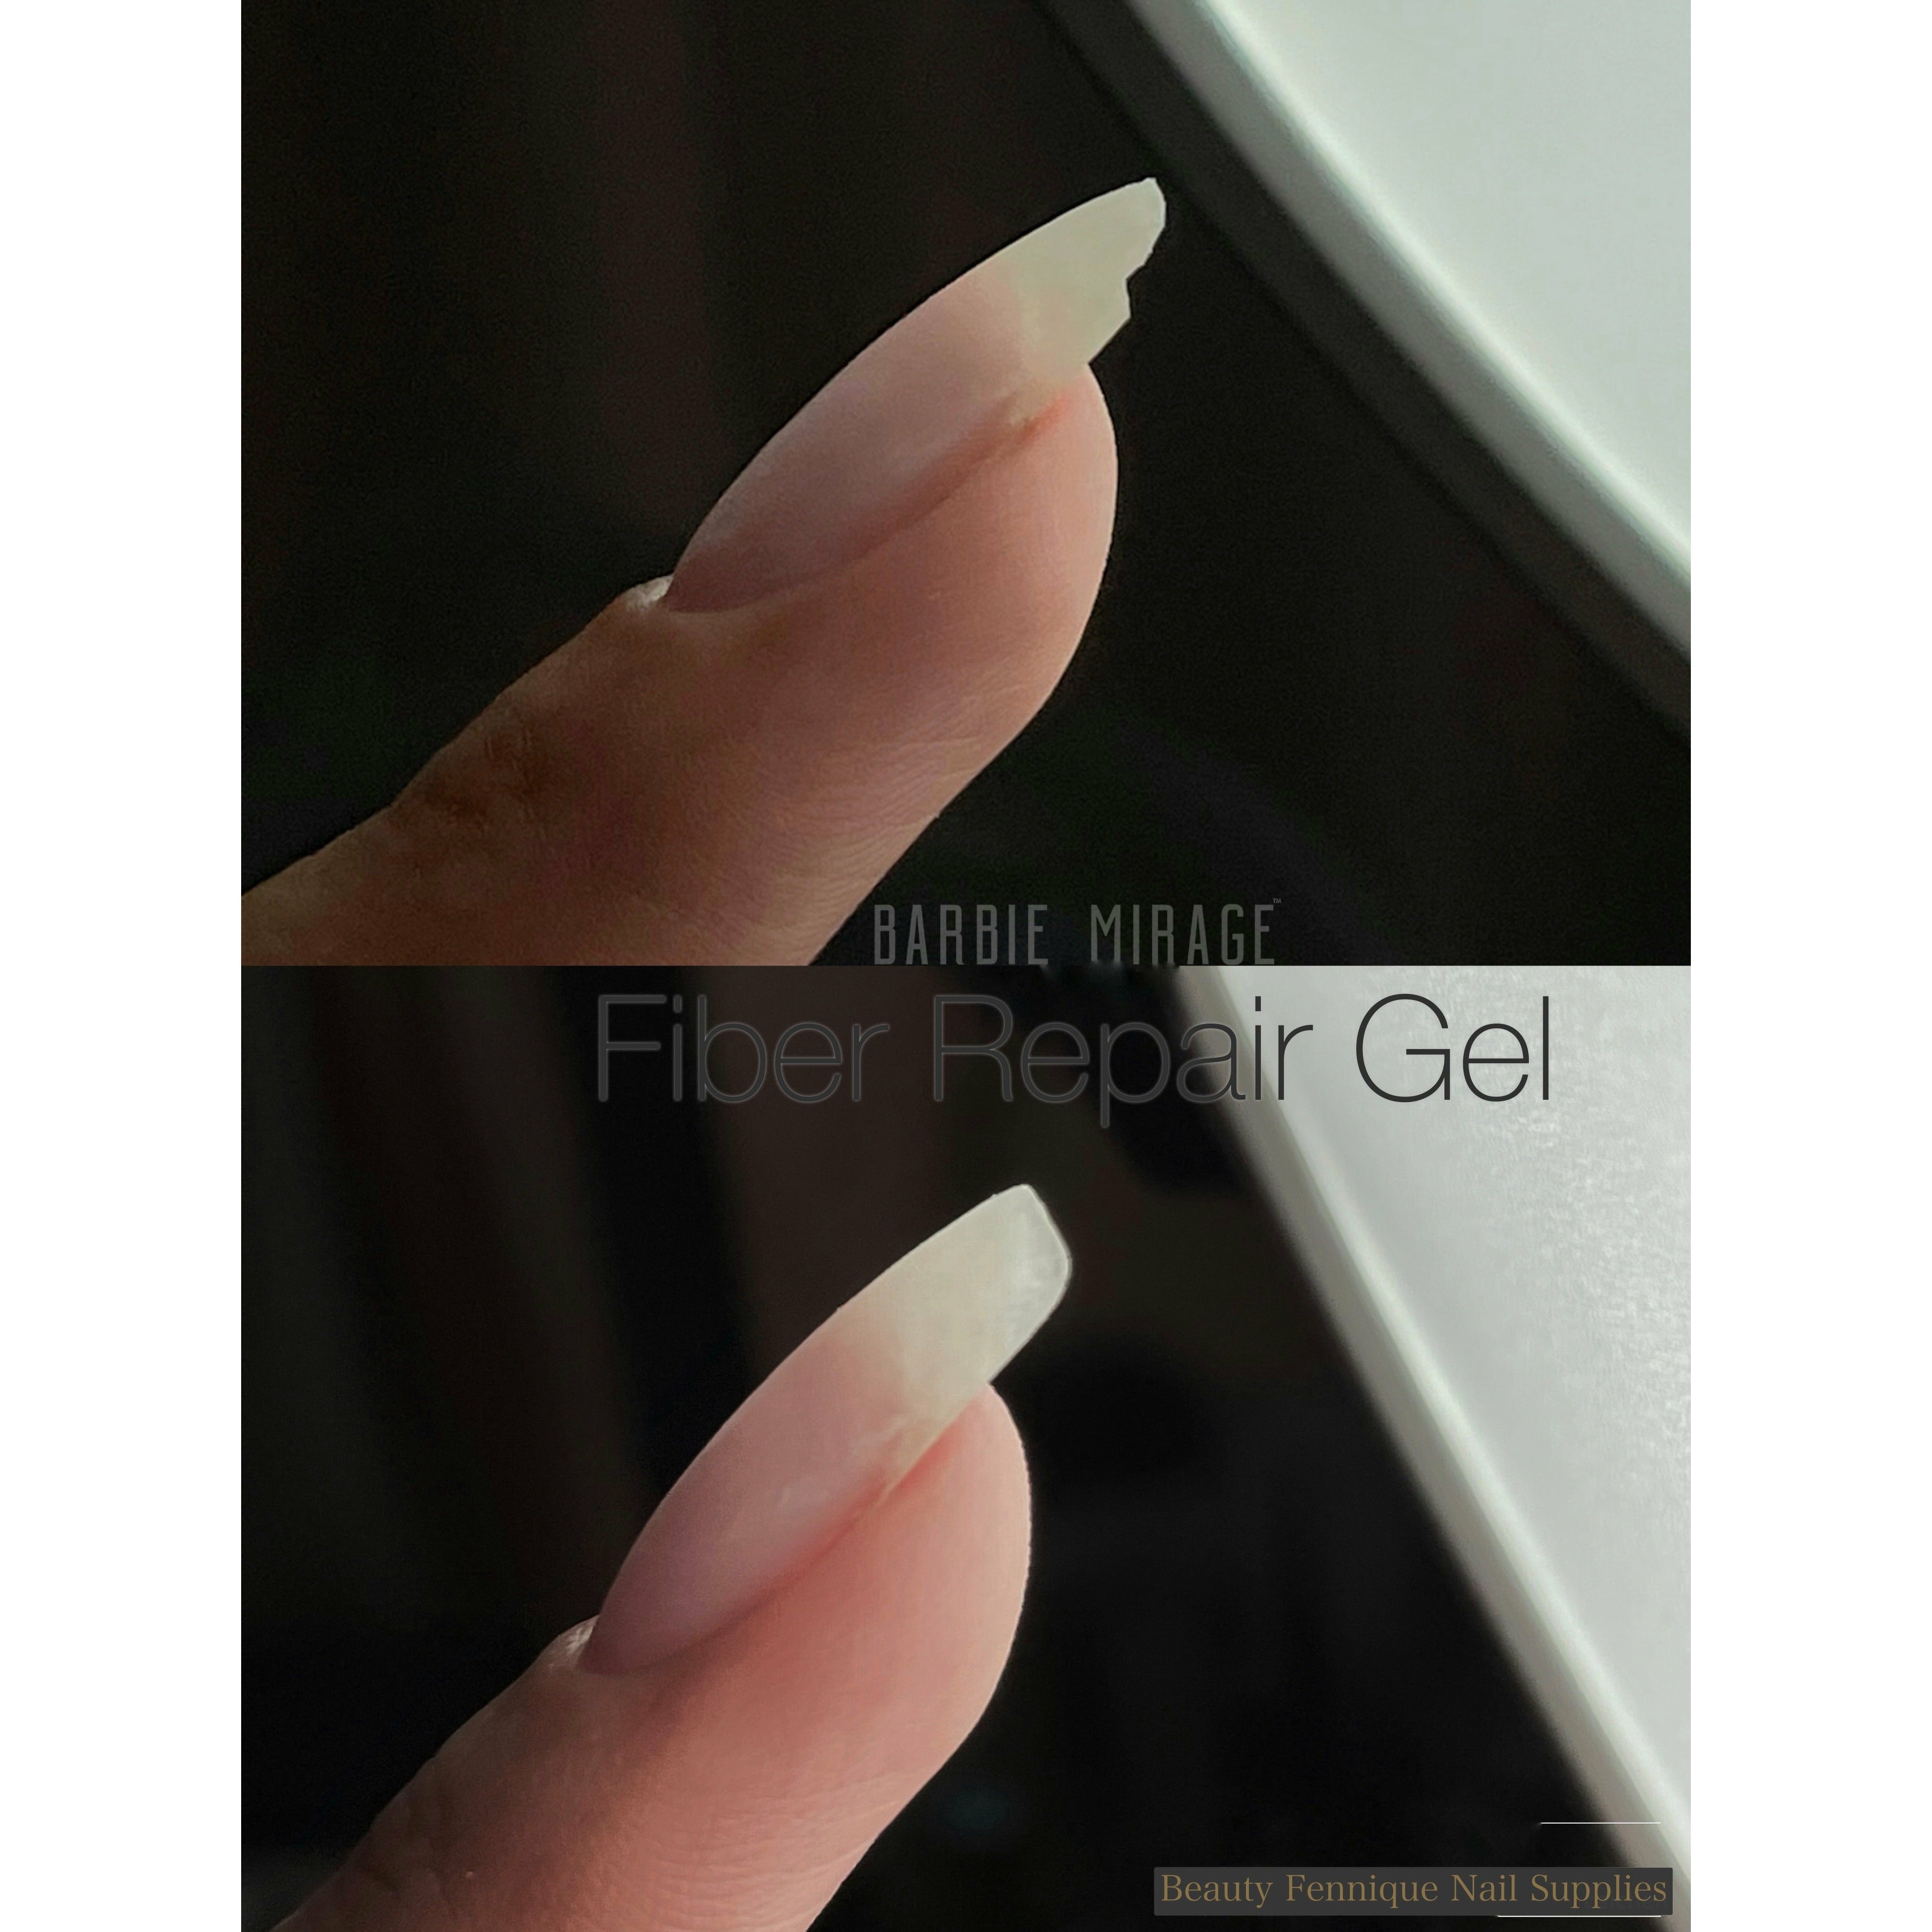 MSHARE Fiber Nails Kit Fiberglass Builder Nail Extension Gel Set Nail  Extension Kits Manicure Salon Tool 7pcs Set - AliExpress